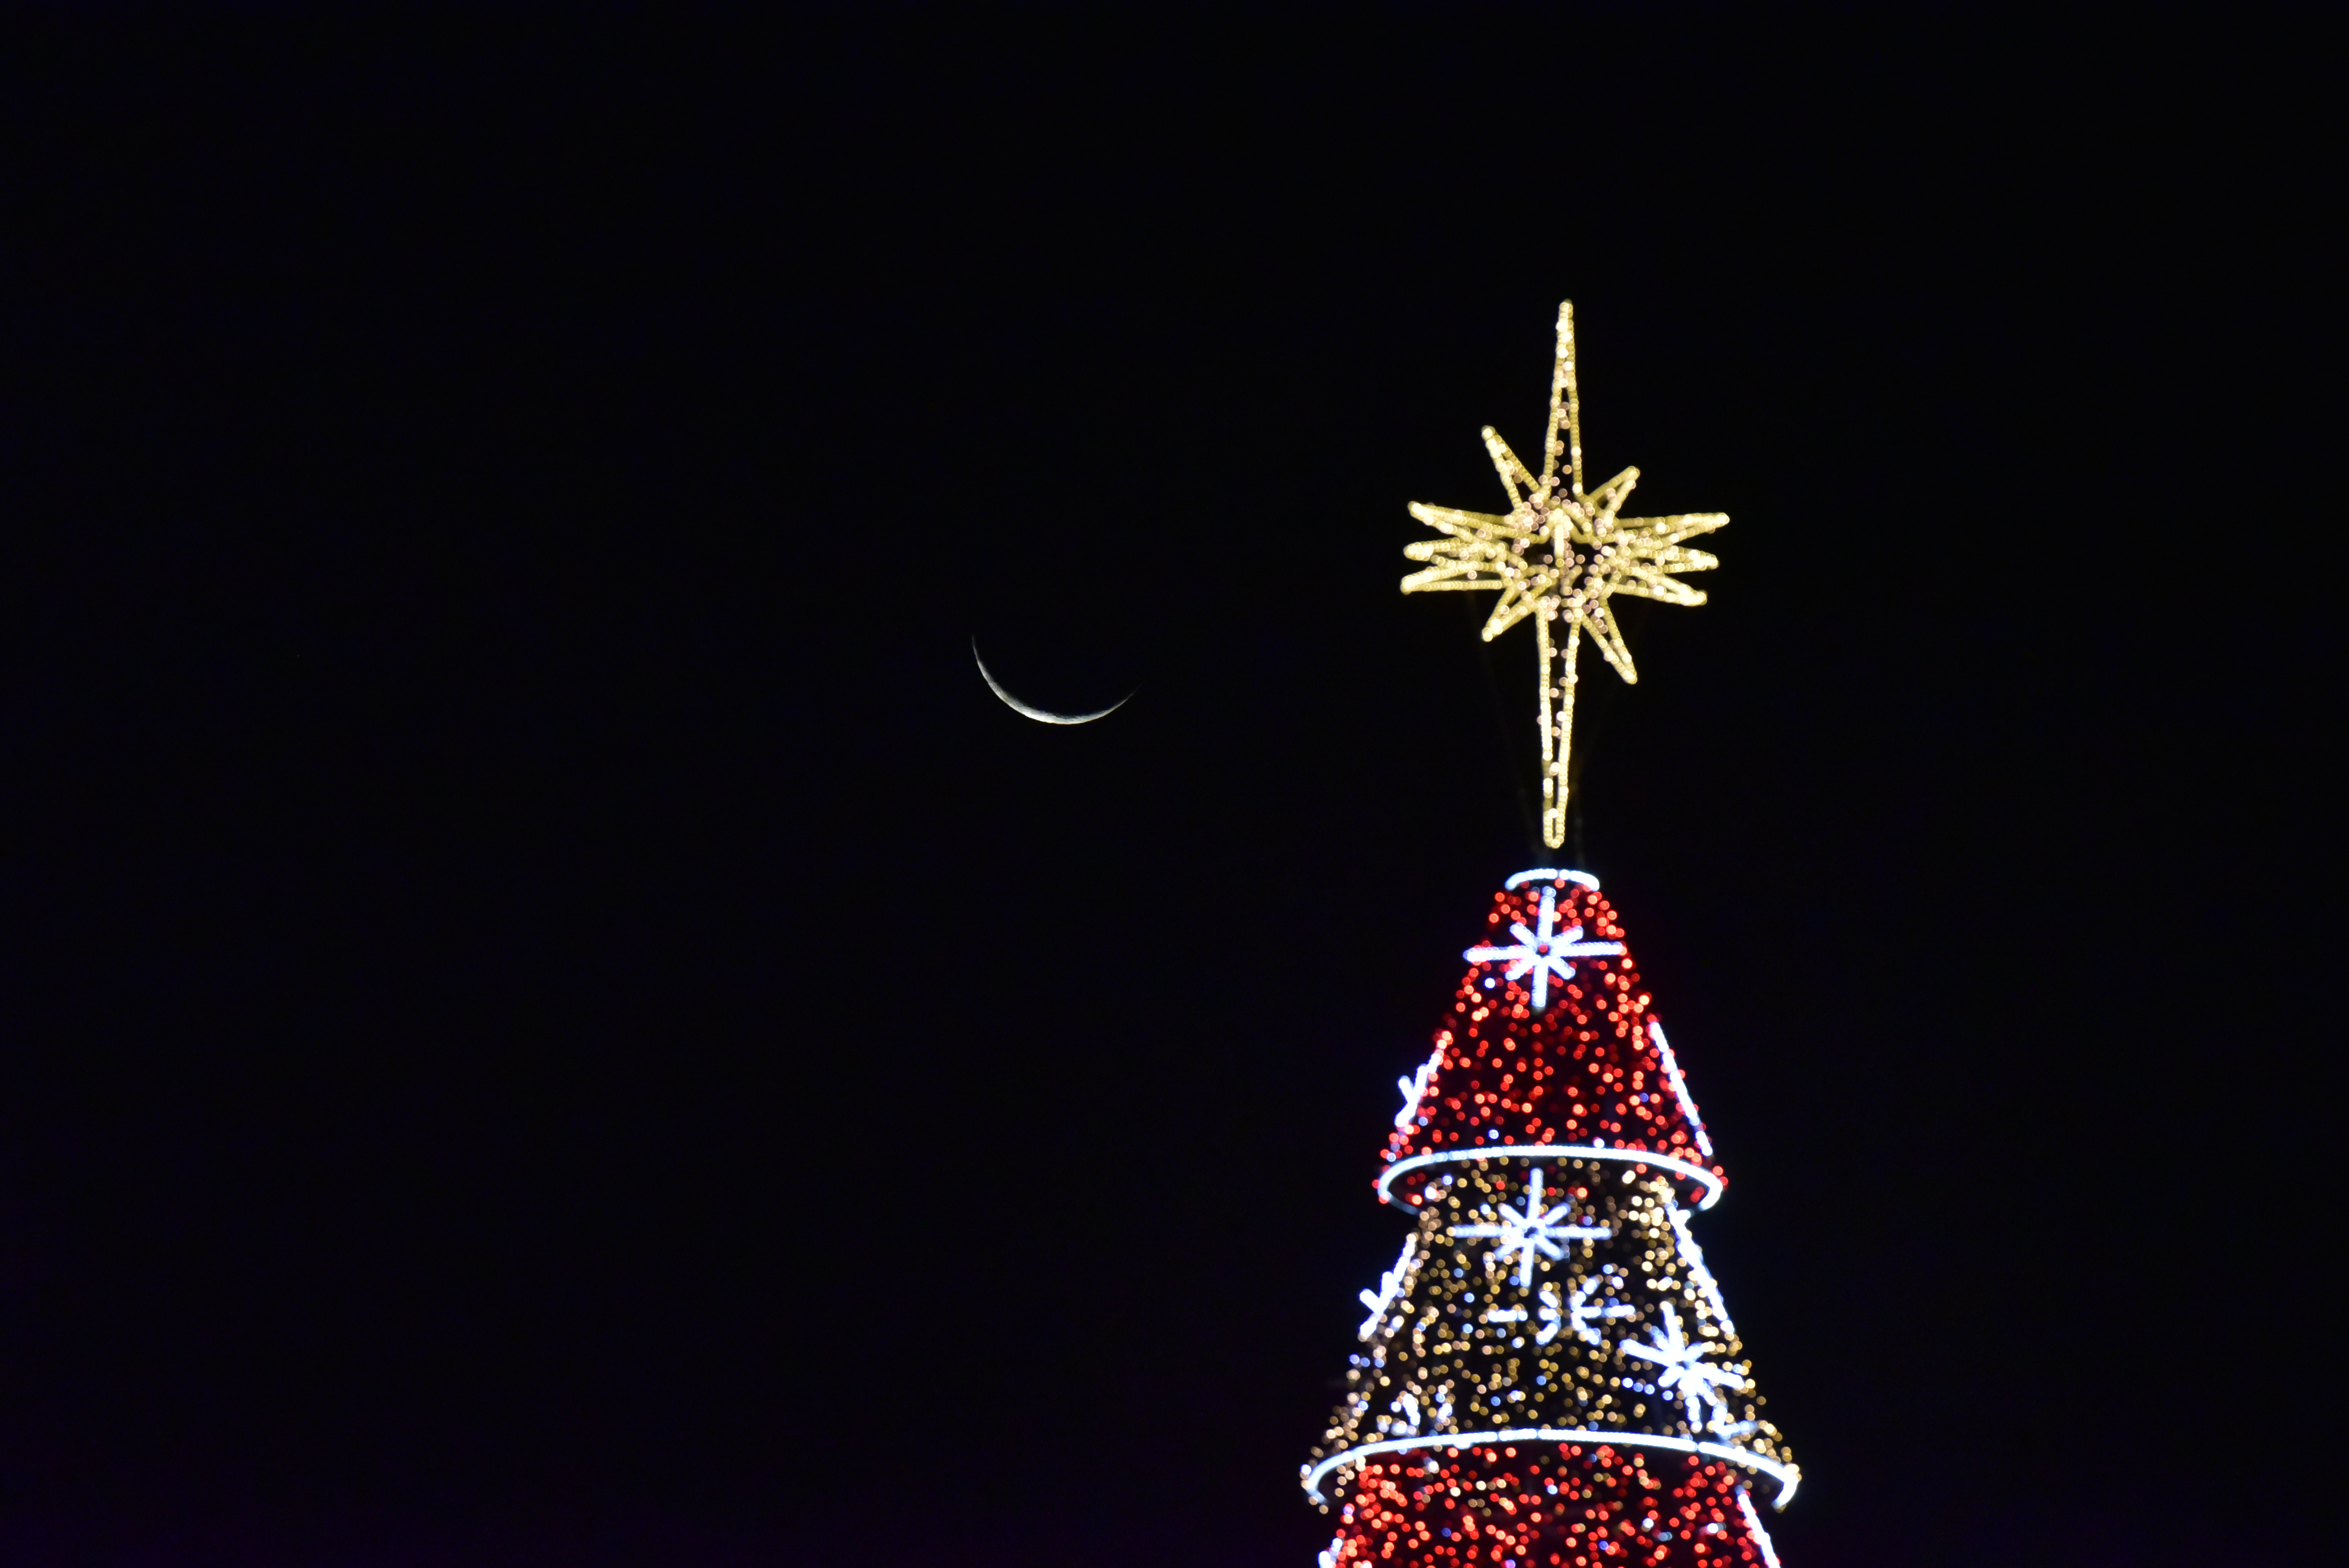 Data: 28/11/2019 - ES - Vitória - Montagem da árvore de natal na Praça do Papa, em Vitória - Editoria: Cidades - Foto: Fernando Madeira - GZ